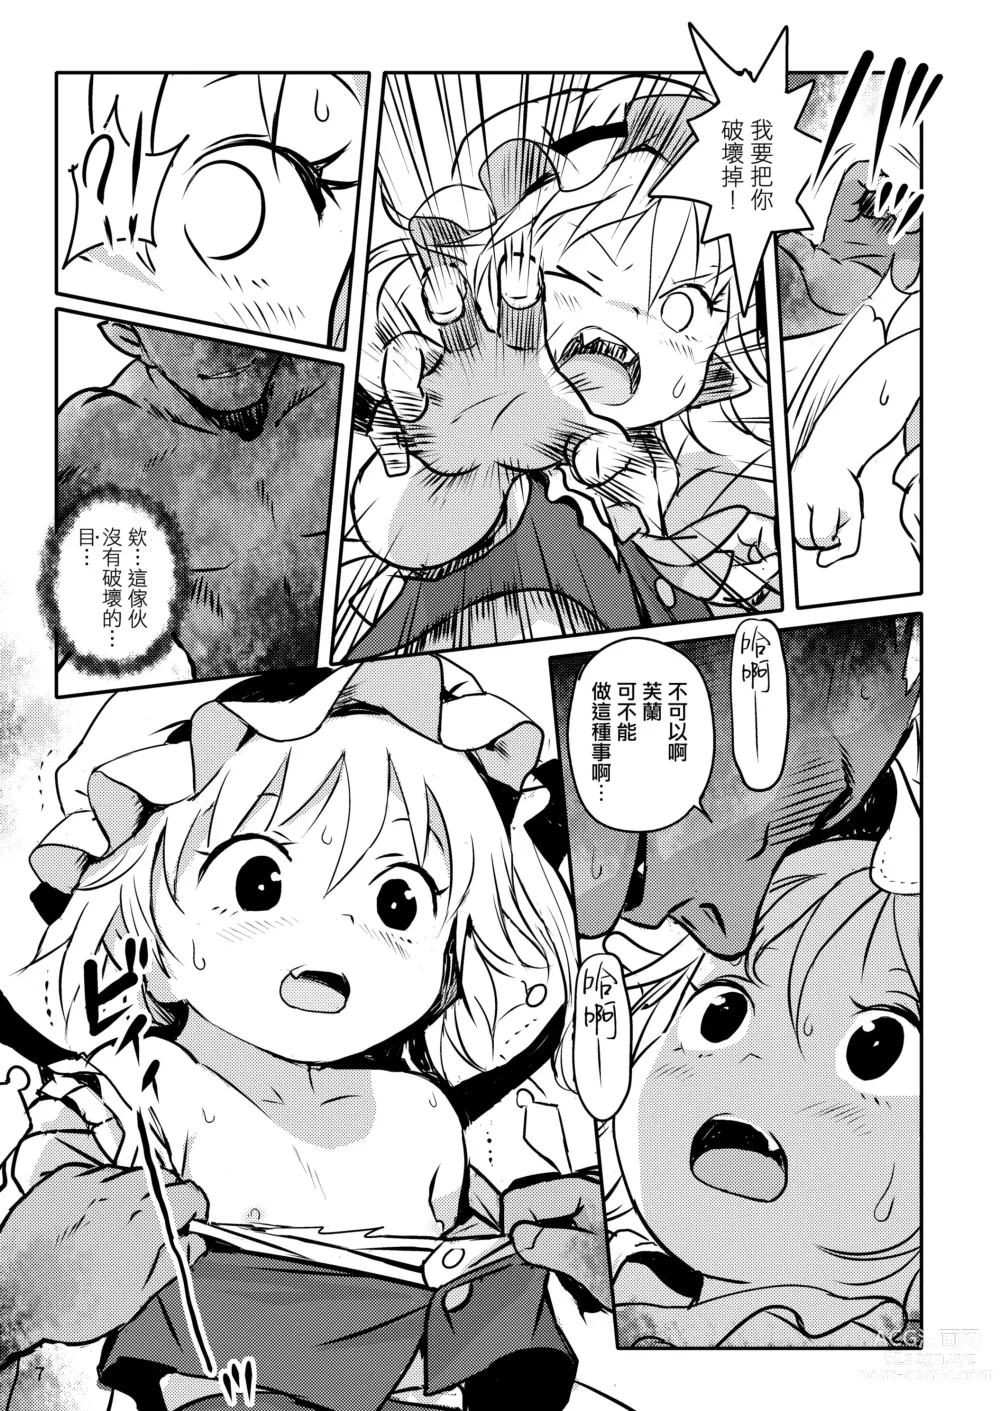 Page 7 of doujinshi 是好孩子吧!芙蘭醬!